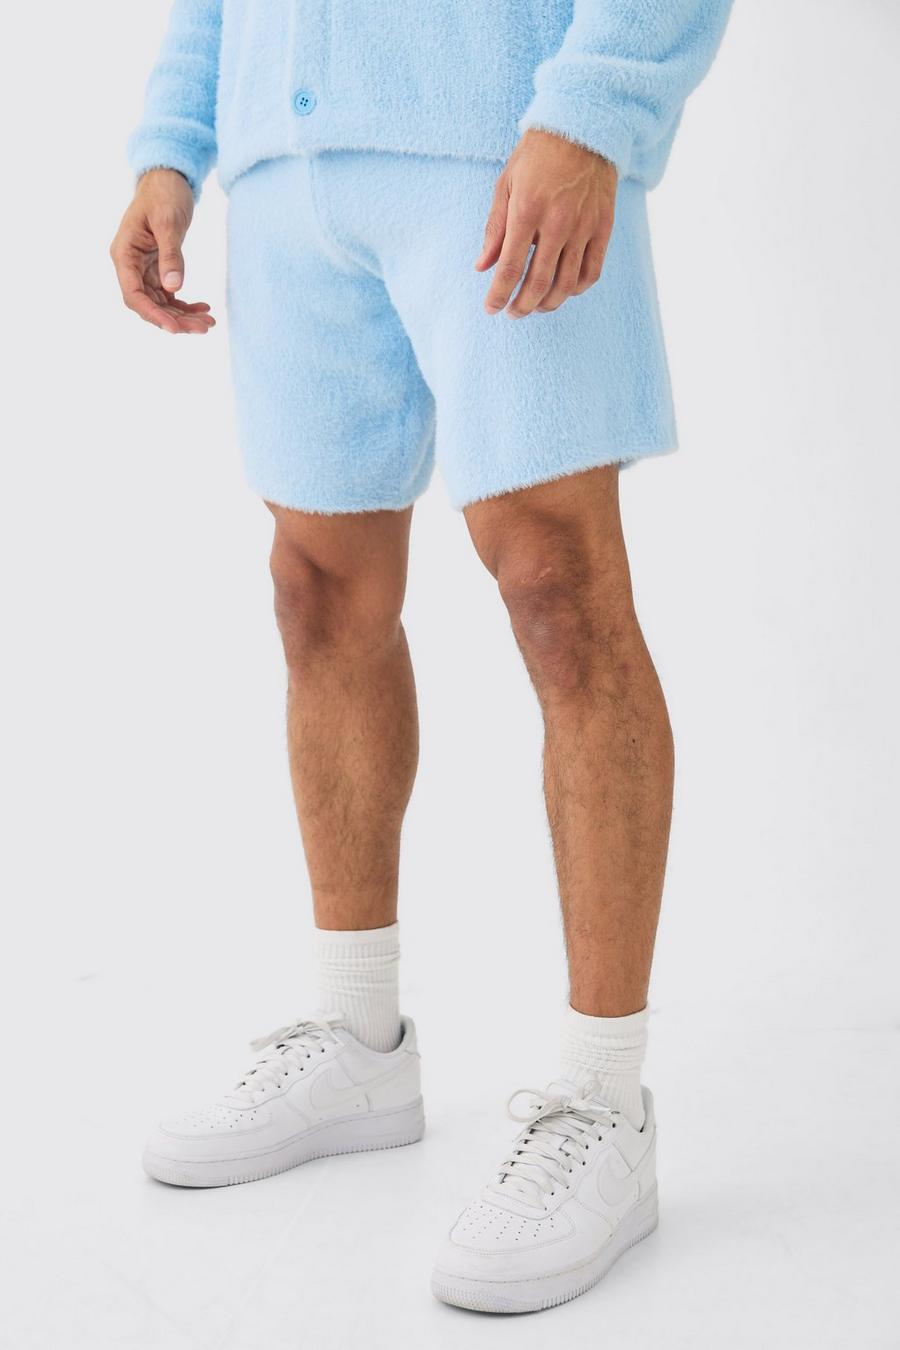 Lockere flauschige Shorts in Hellblau, Light blue